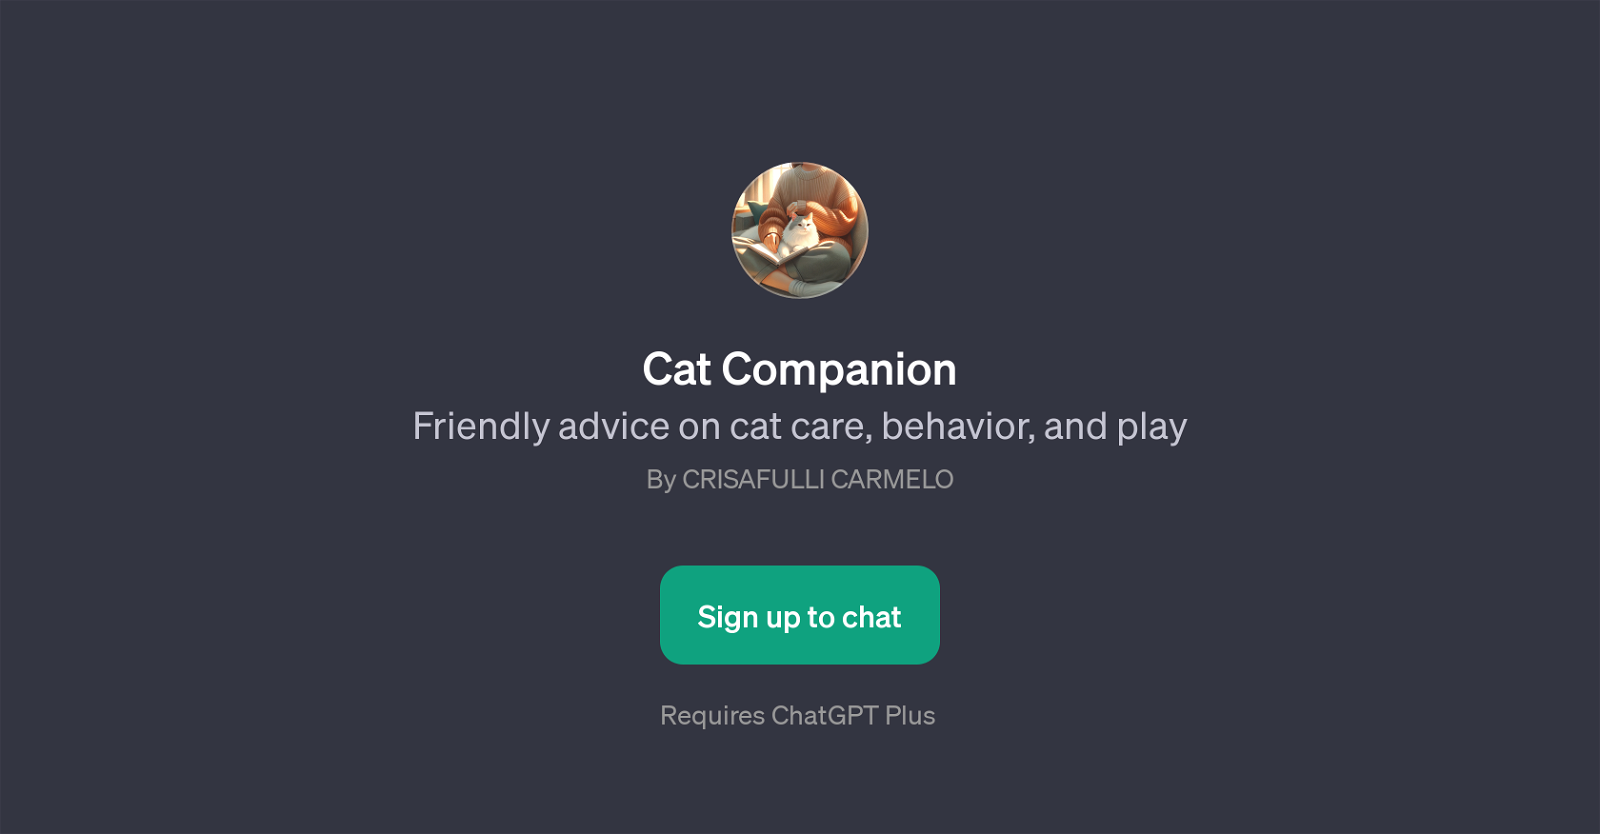 Cat Companion website